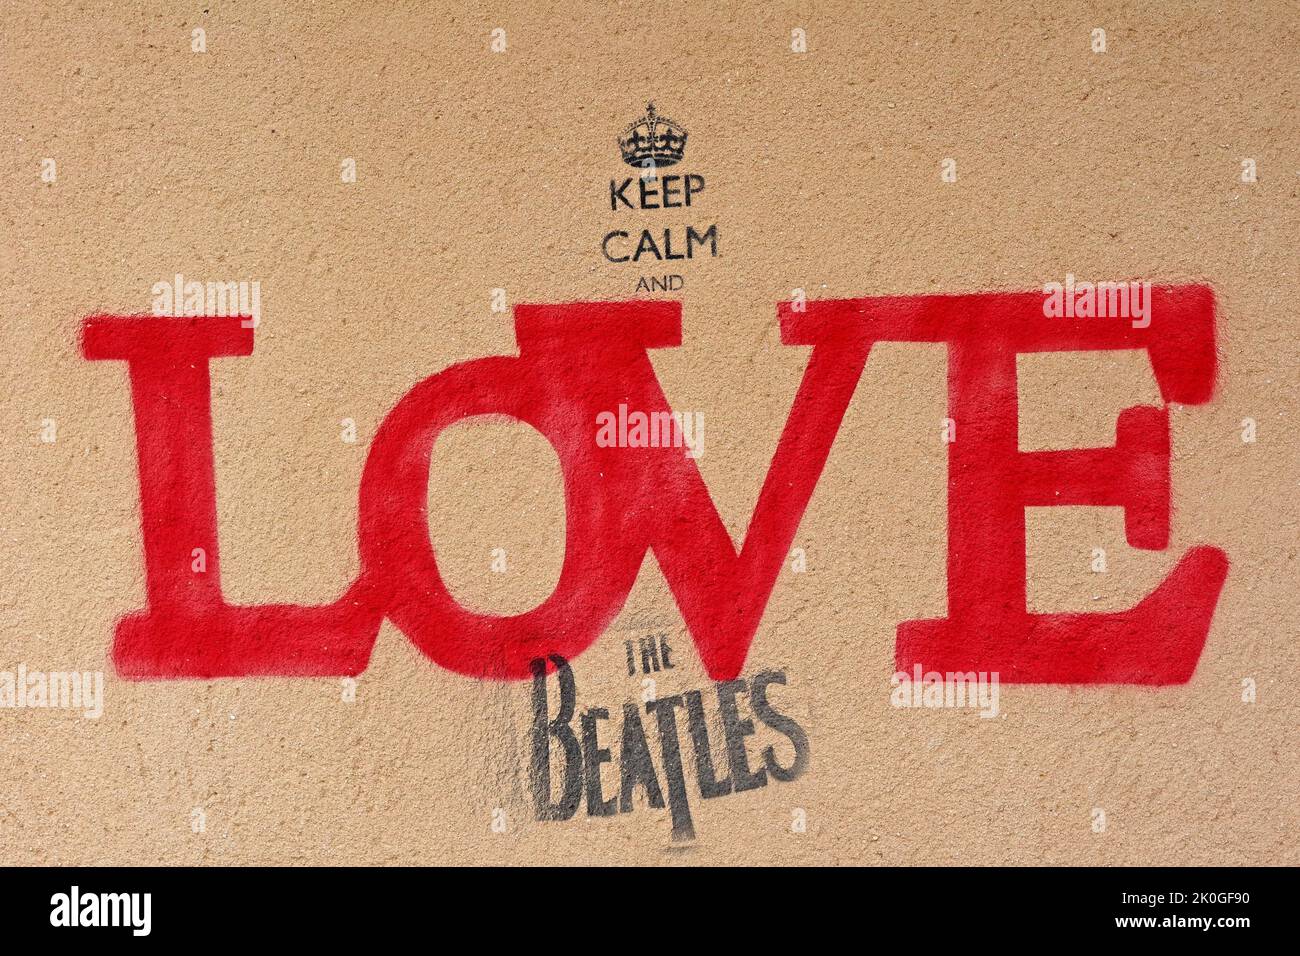 Gardez le calme et l'amour les Beatles, peinture murale à Penny Lane, Liverpool, Merseyside, Angleterre, Royaume-Uni, L18 1DE Banque D'Images